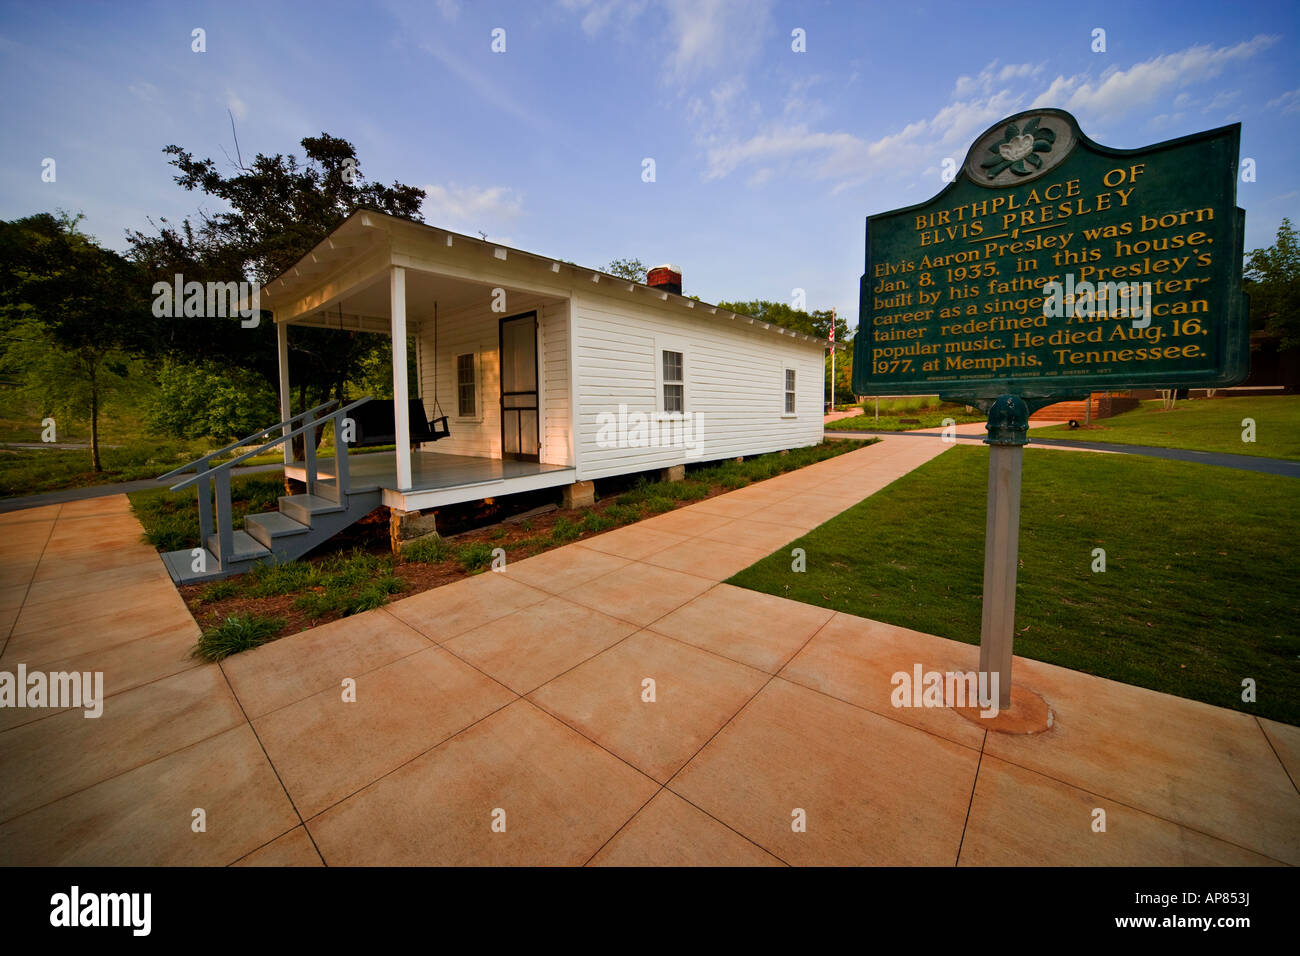 Tupelo Mississippi: Der Geburtsort von Elvis Presley. Haus mit Erbe Zeichen. Stockfoto